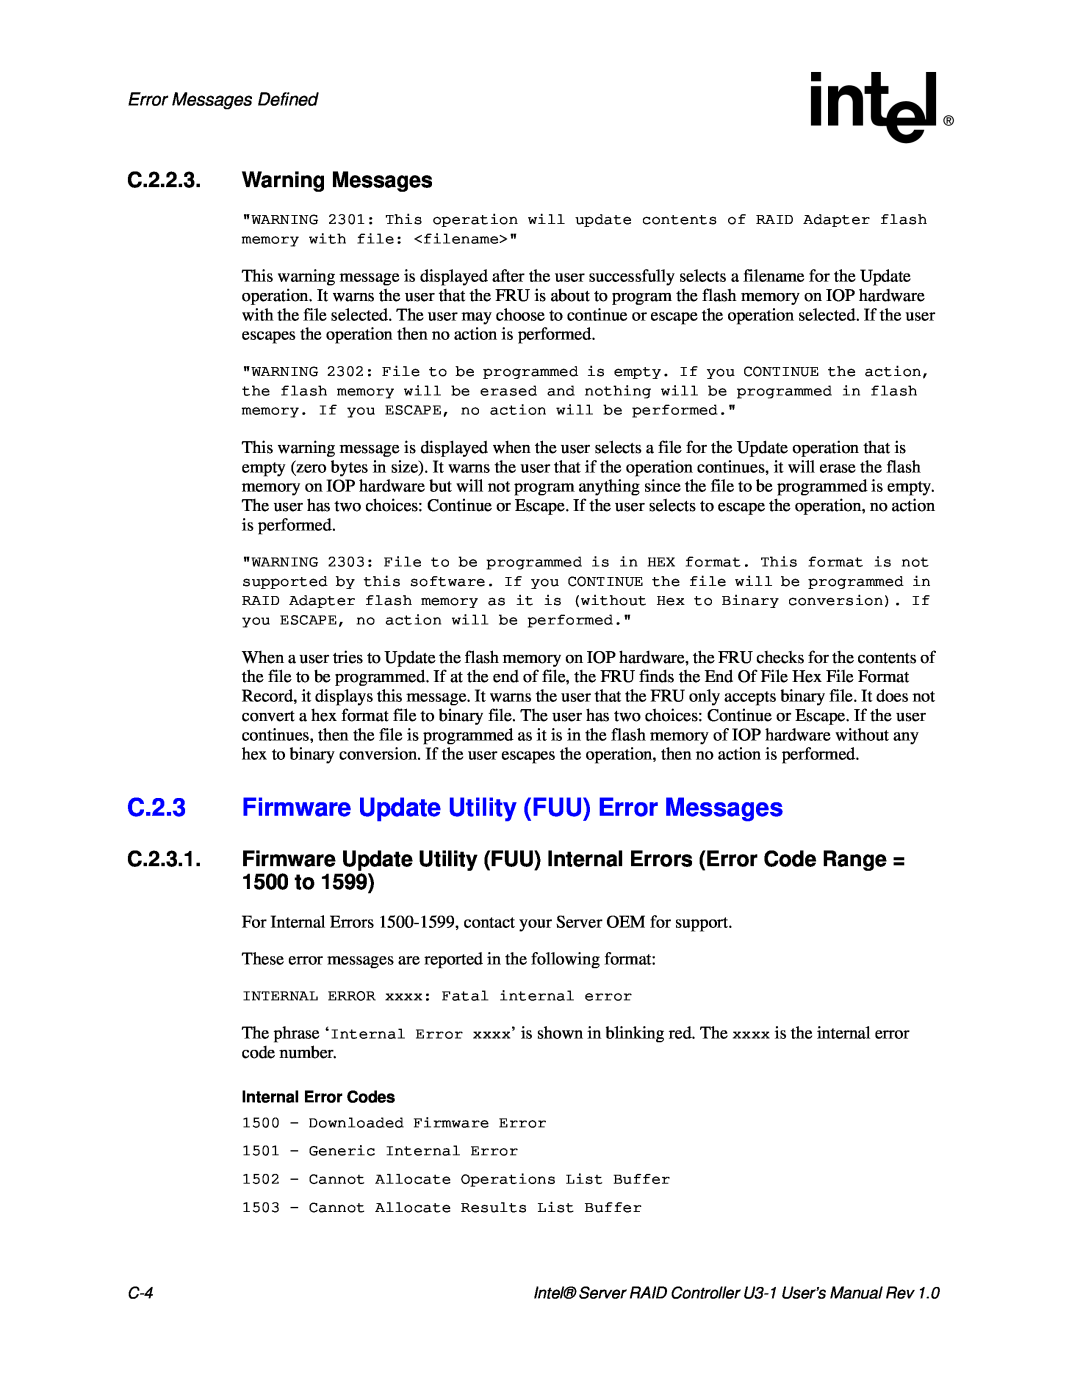 Intel SRCU31 C.2.3 Firmware Update Utility FUU Error Messages, C.2.2.3. Warning Messages, Error Messages Defined 